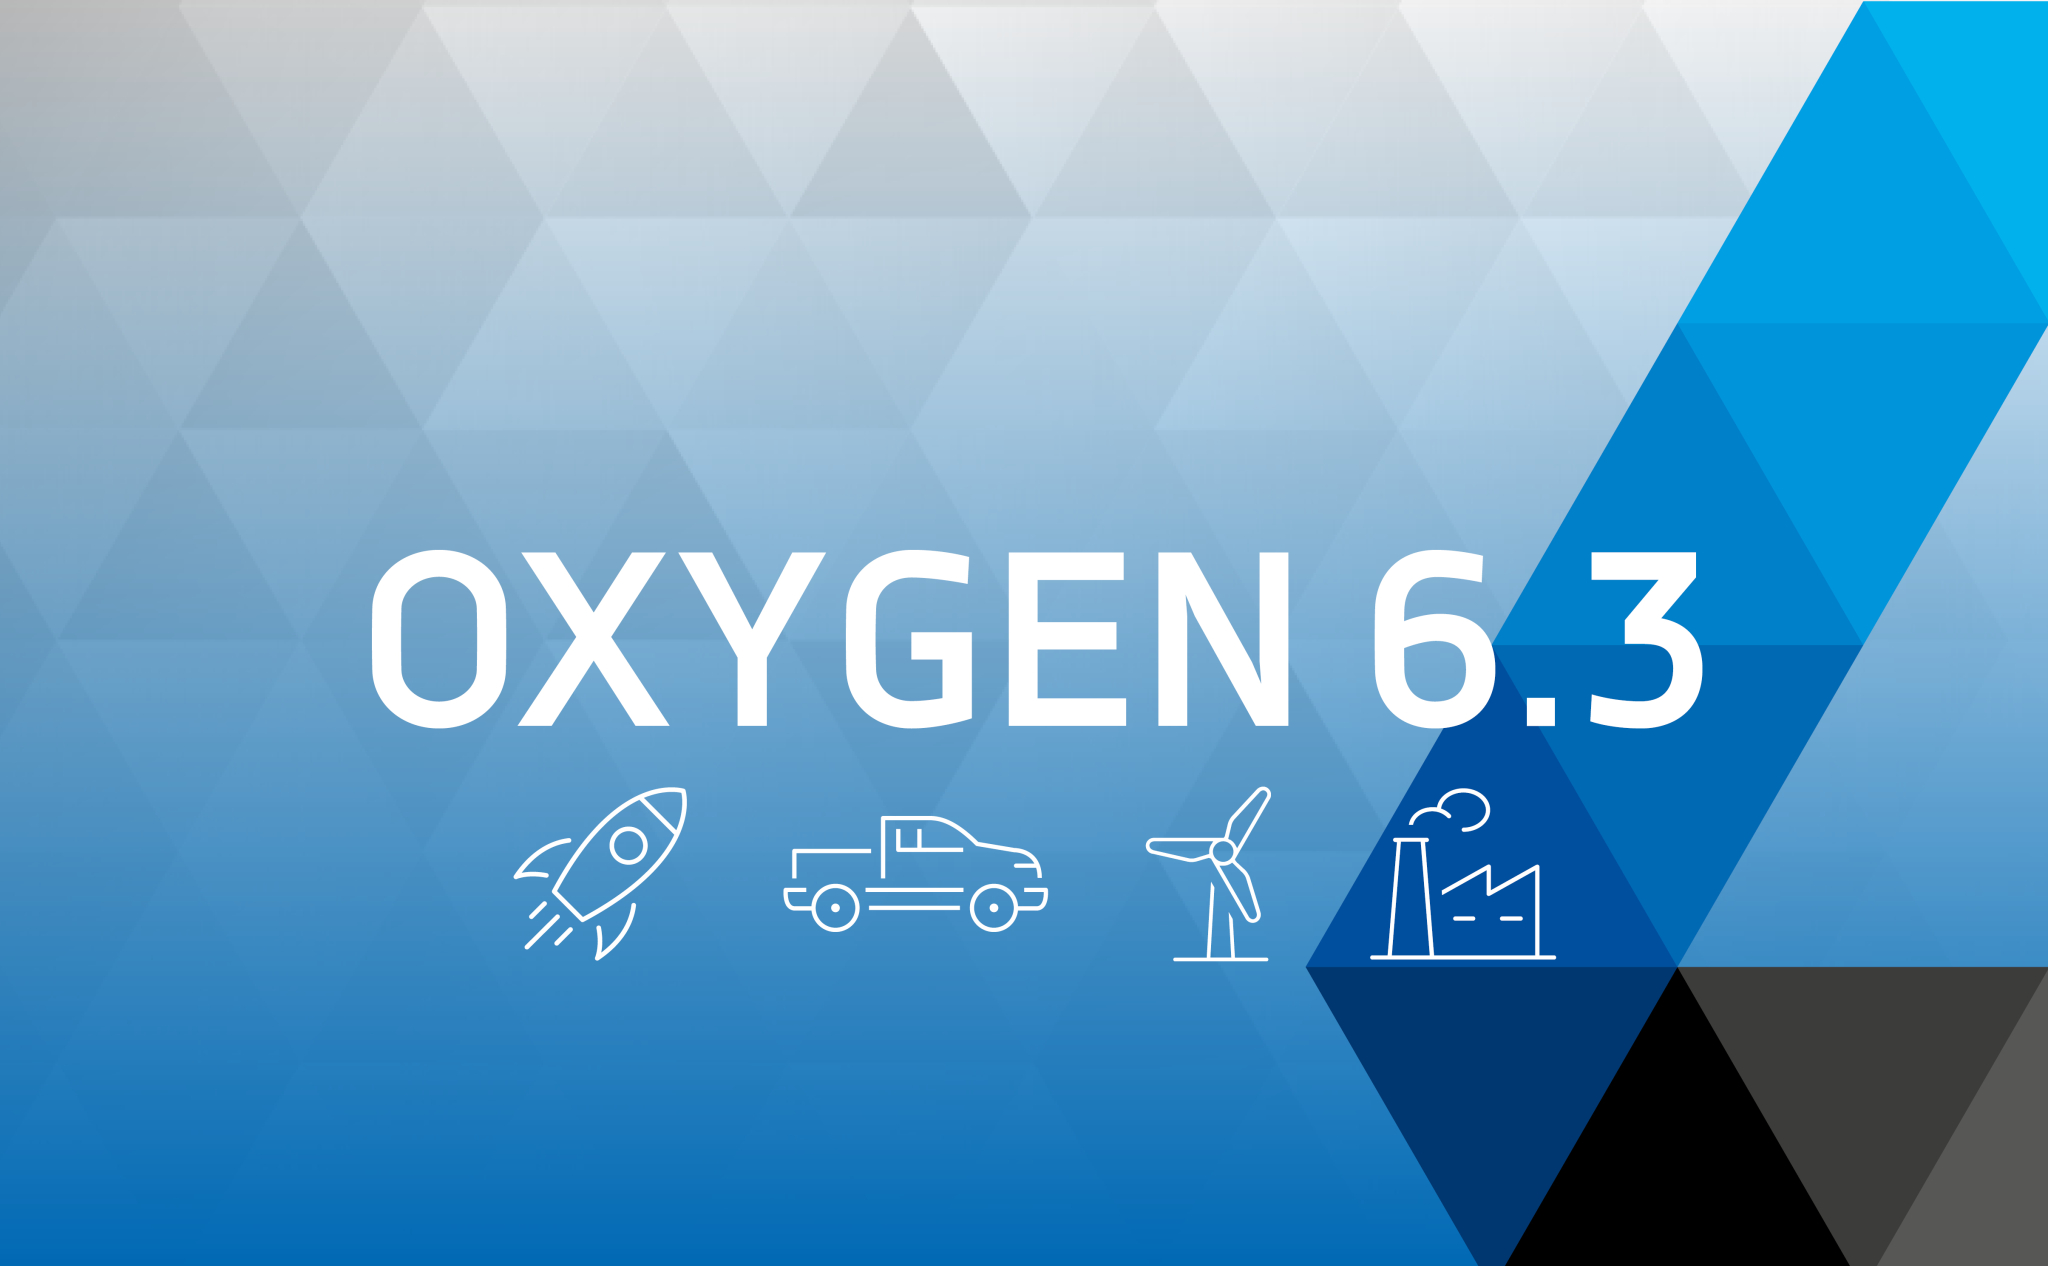 OXYGEN 6.3 – NOUVELLES FONCTIONS